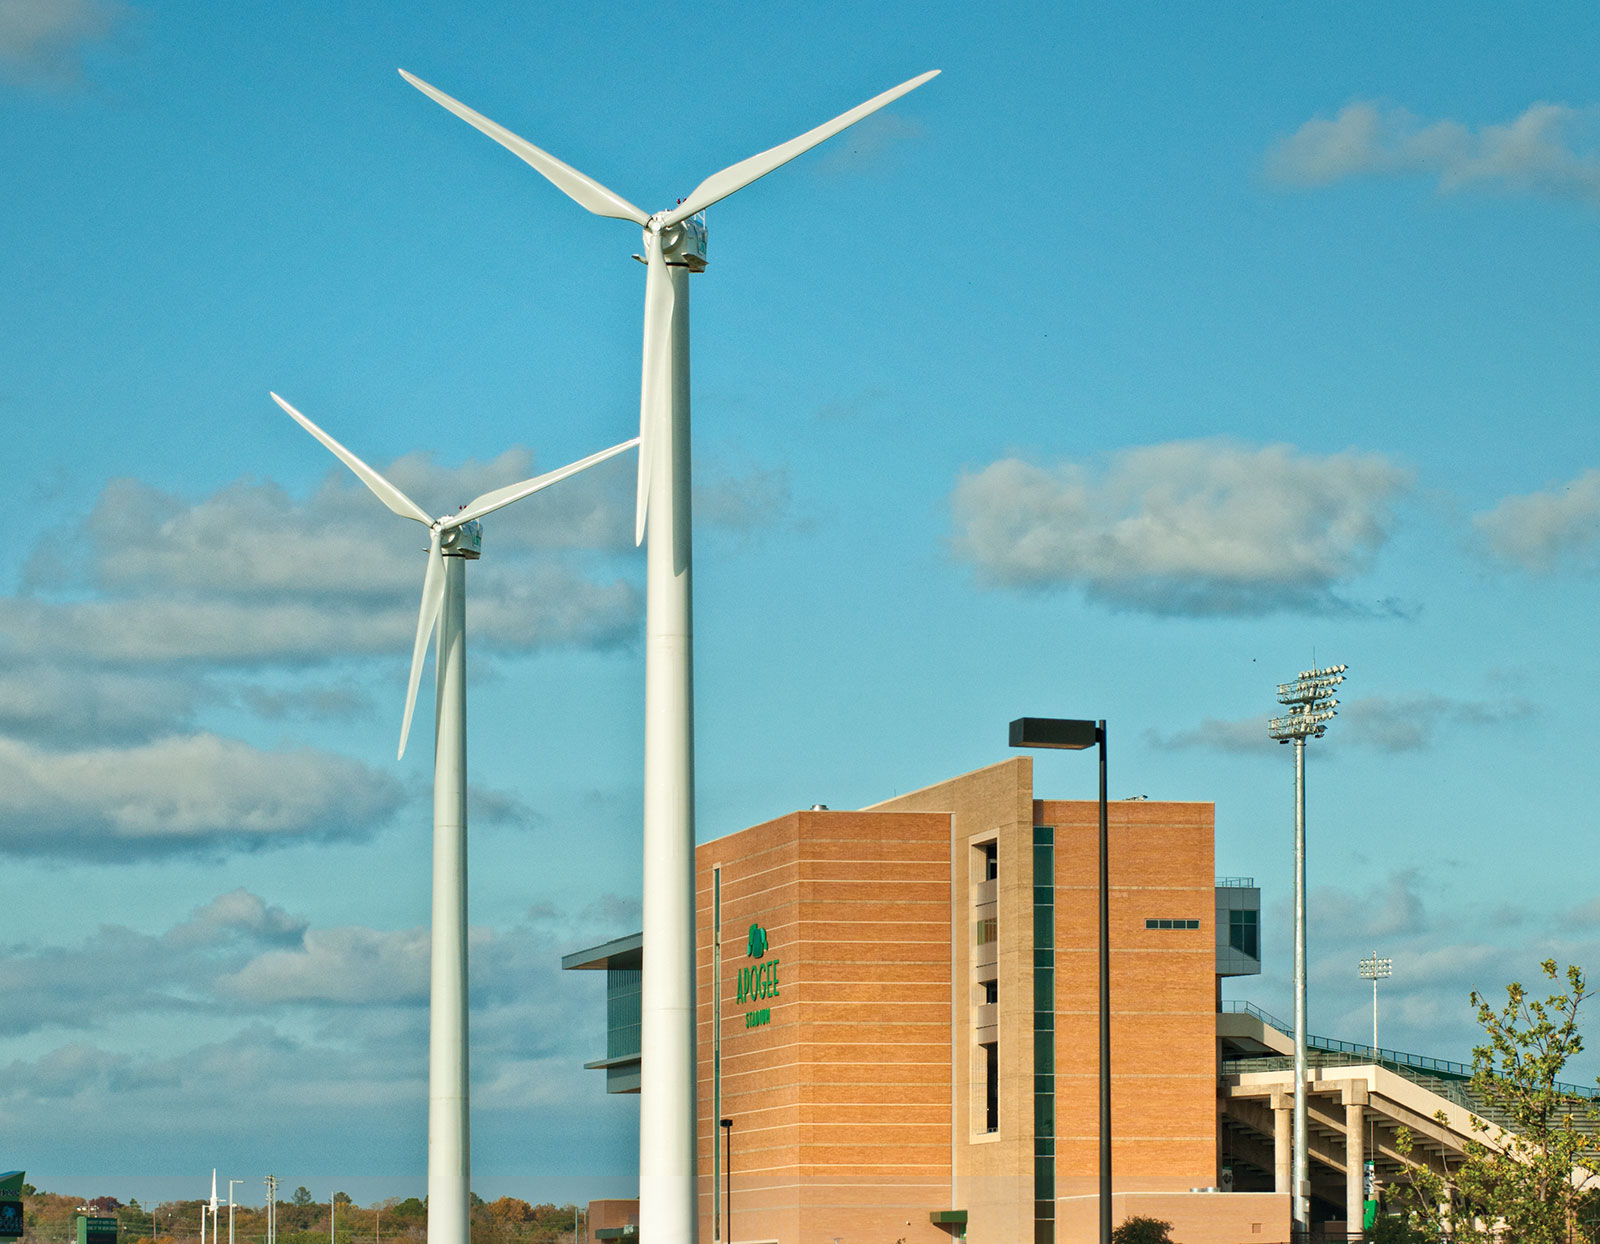 UNT Wind Tubines at the Apogee Stadium